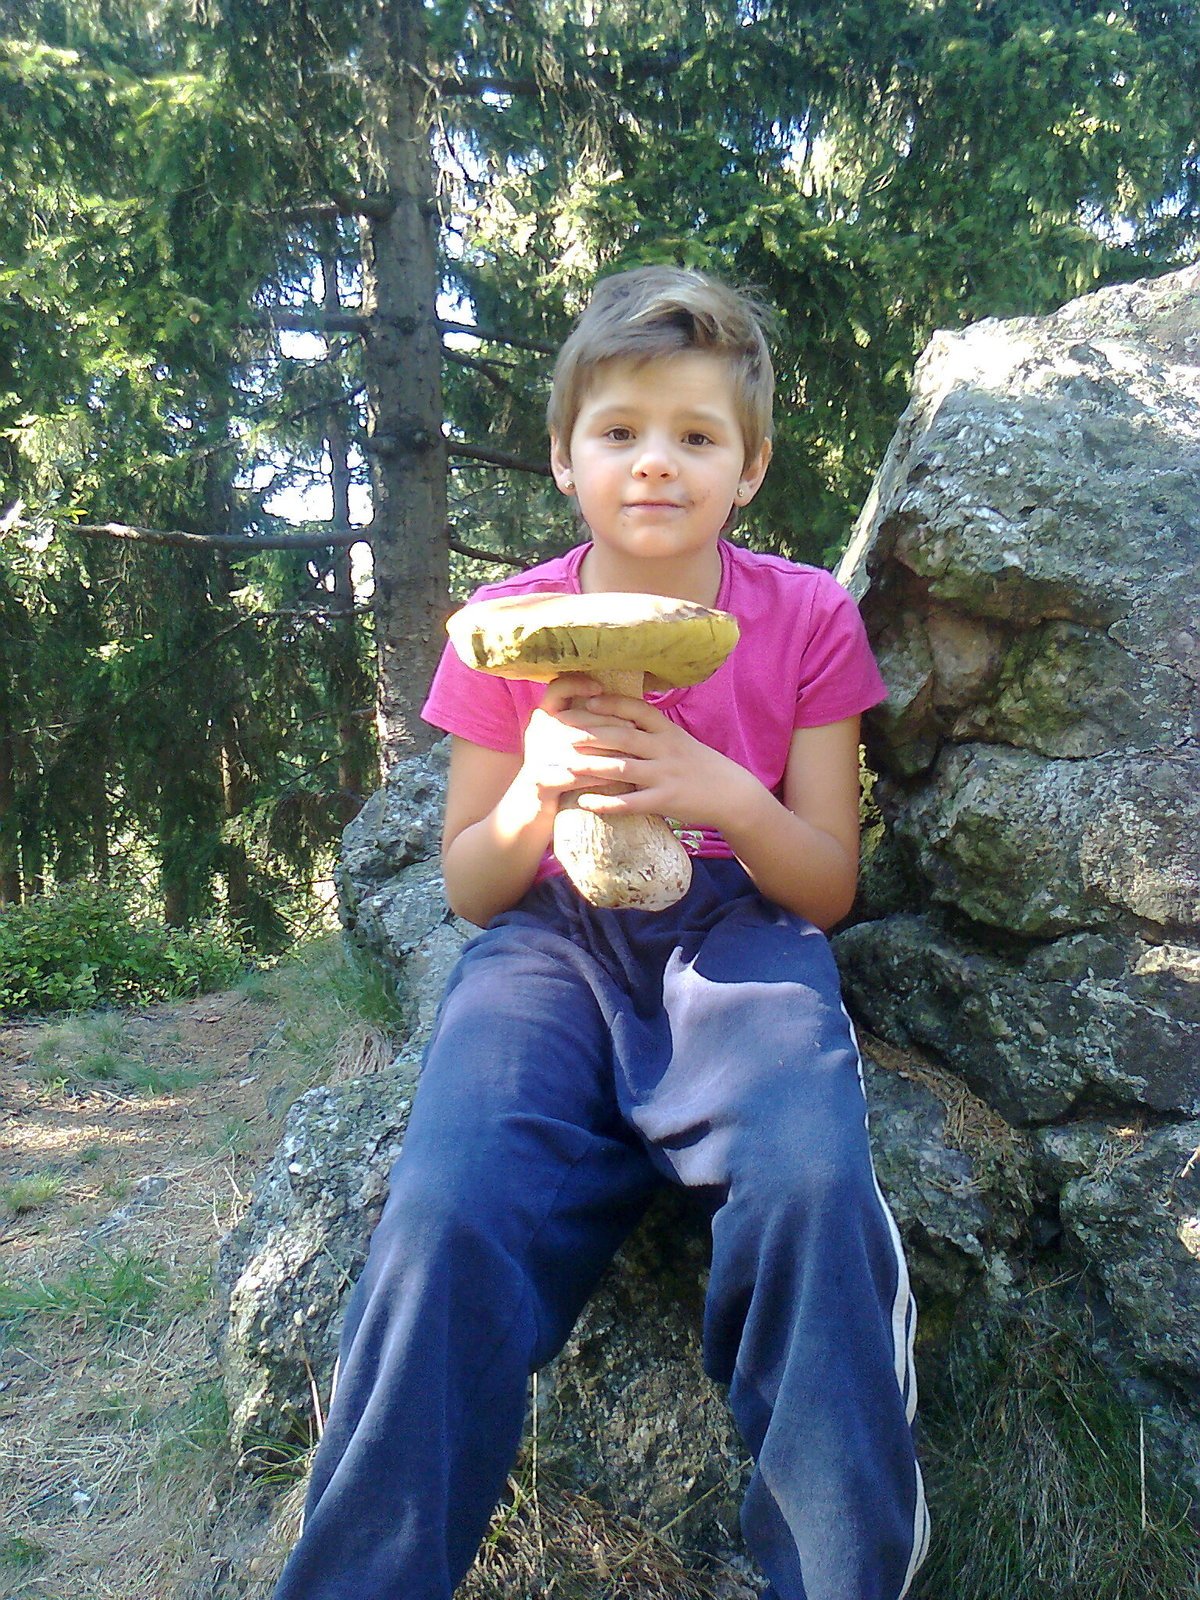 Hříbek krasavec  Zdeněk Voborník vyfotil dceru Natálku s největším hříbkem, který v lese našli. „Šli jsme jen na procházku a našli jsme celkem padesát hříbků,“ dodává pan Zdeněk.